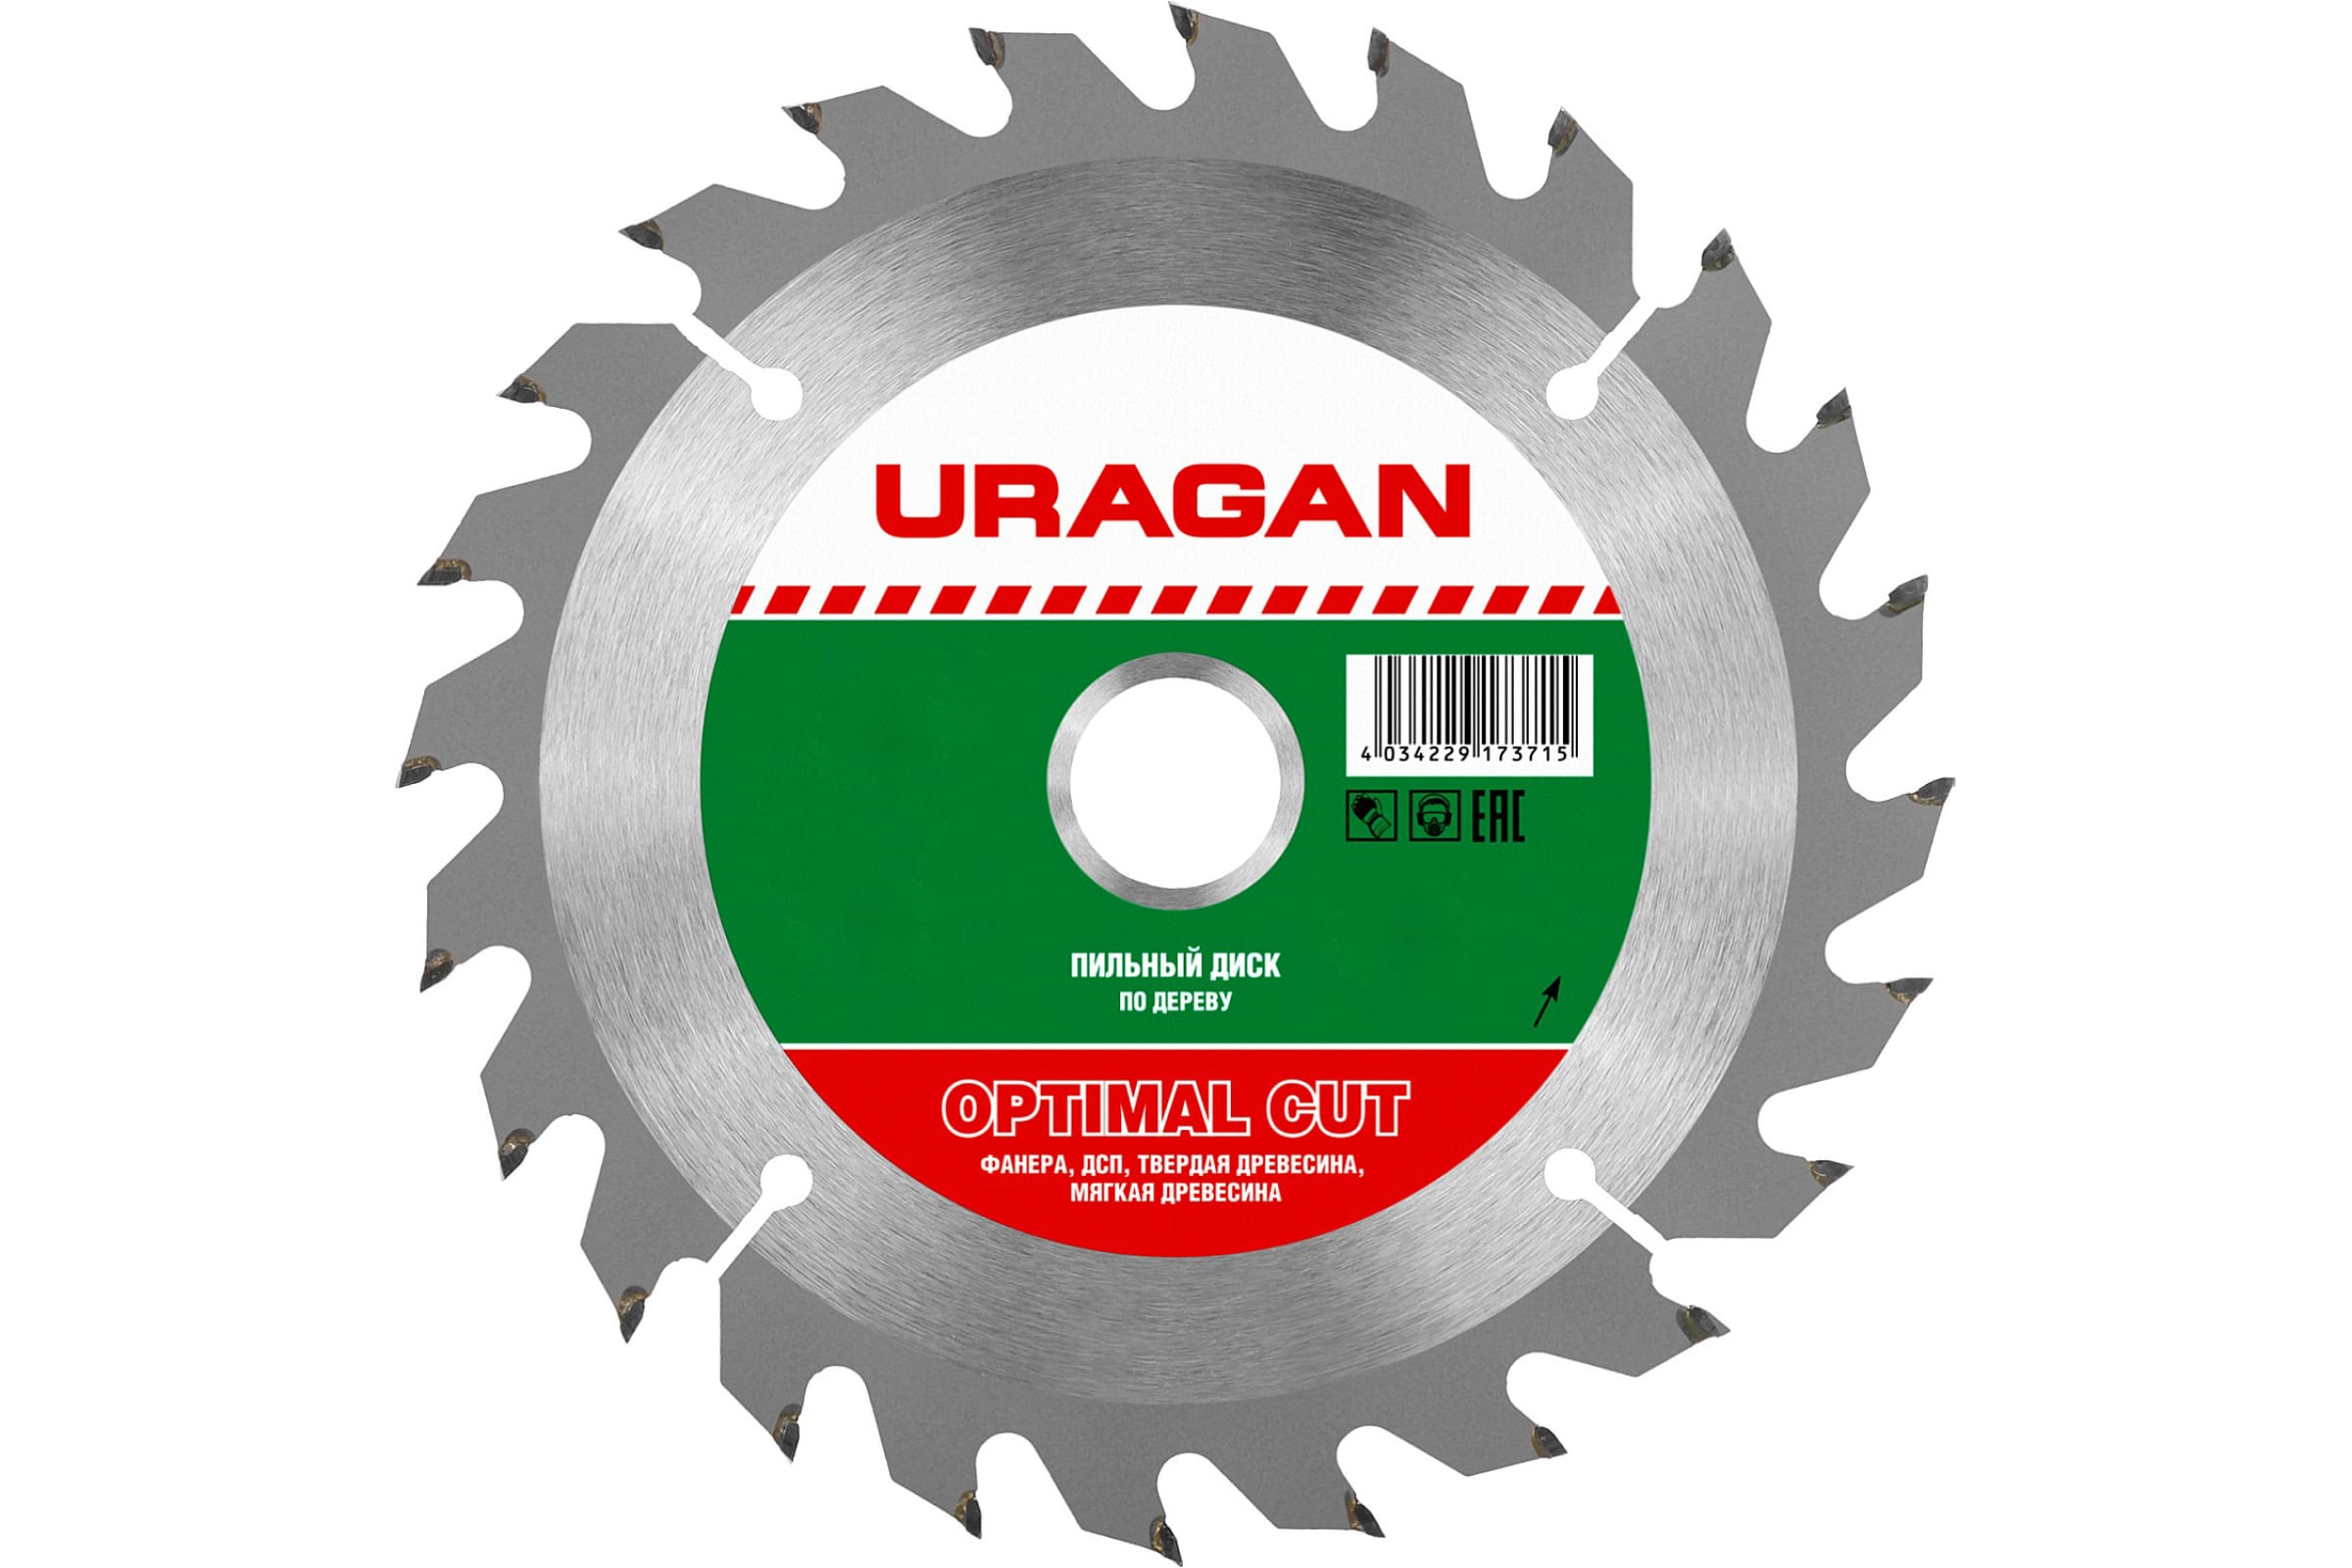 Пильный диск URAGAN Optima, ⌀14 см x 2 см по дереву, оптимальный рез, 20Т, 1 шт. (36801-140-20-20_z01)